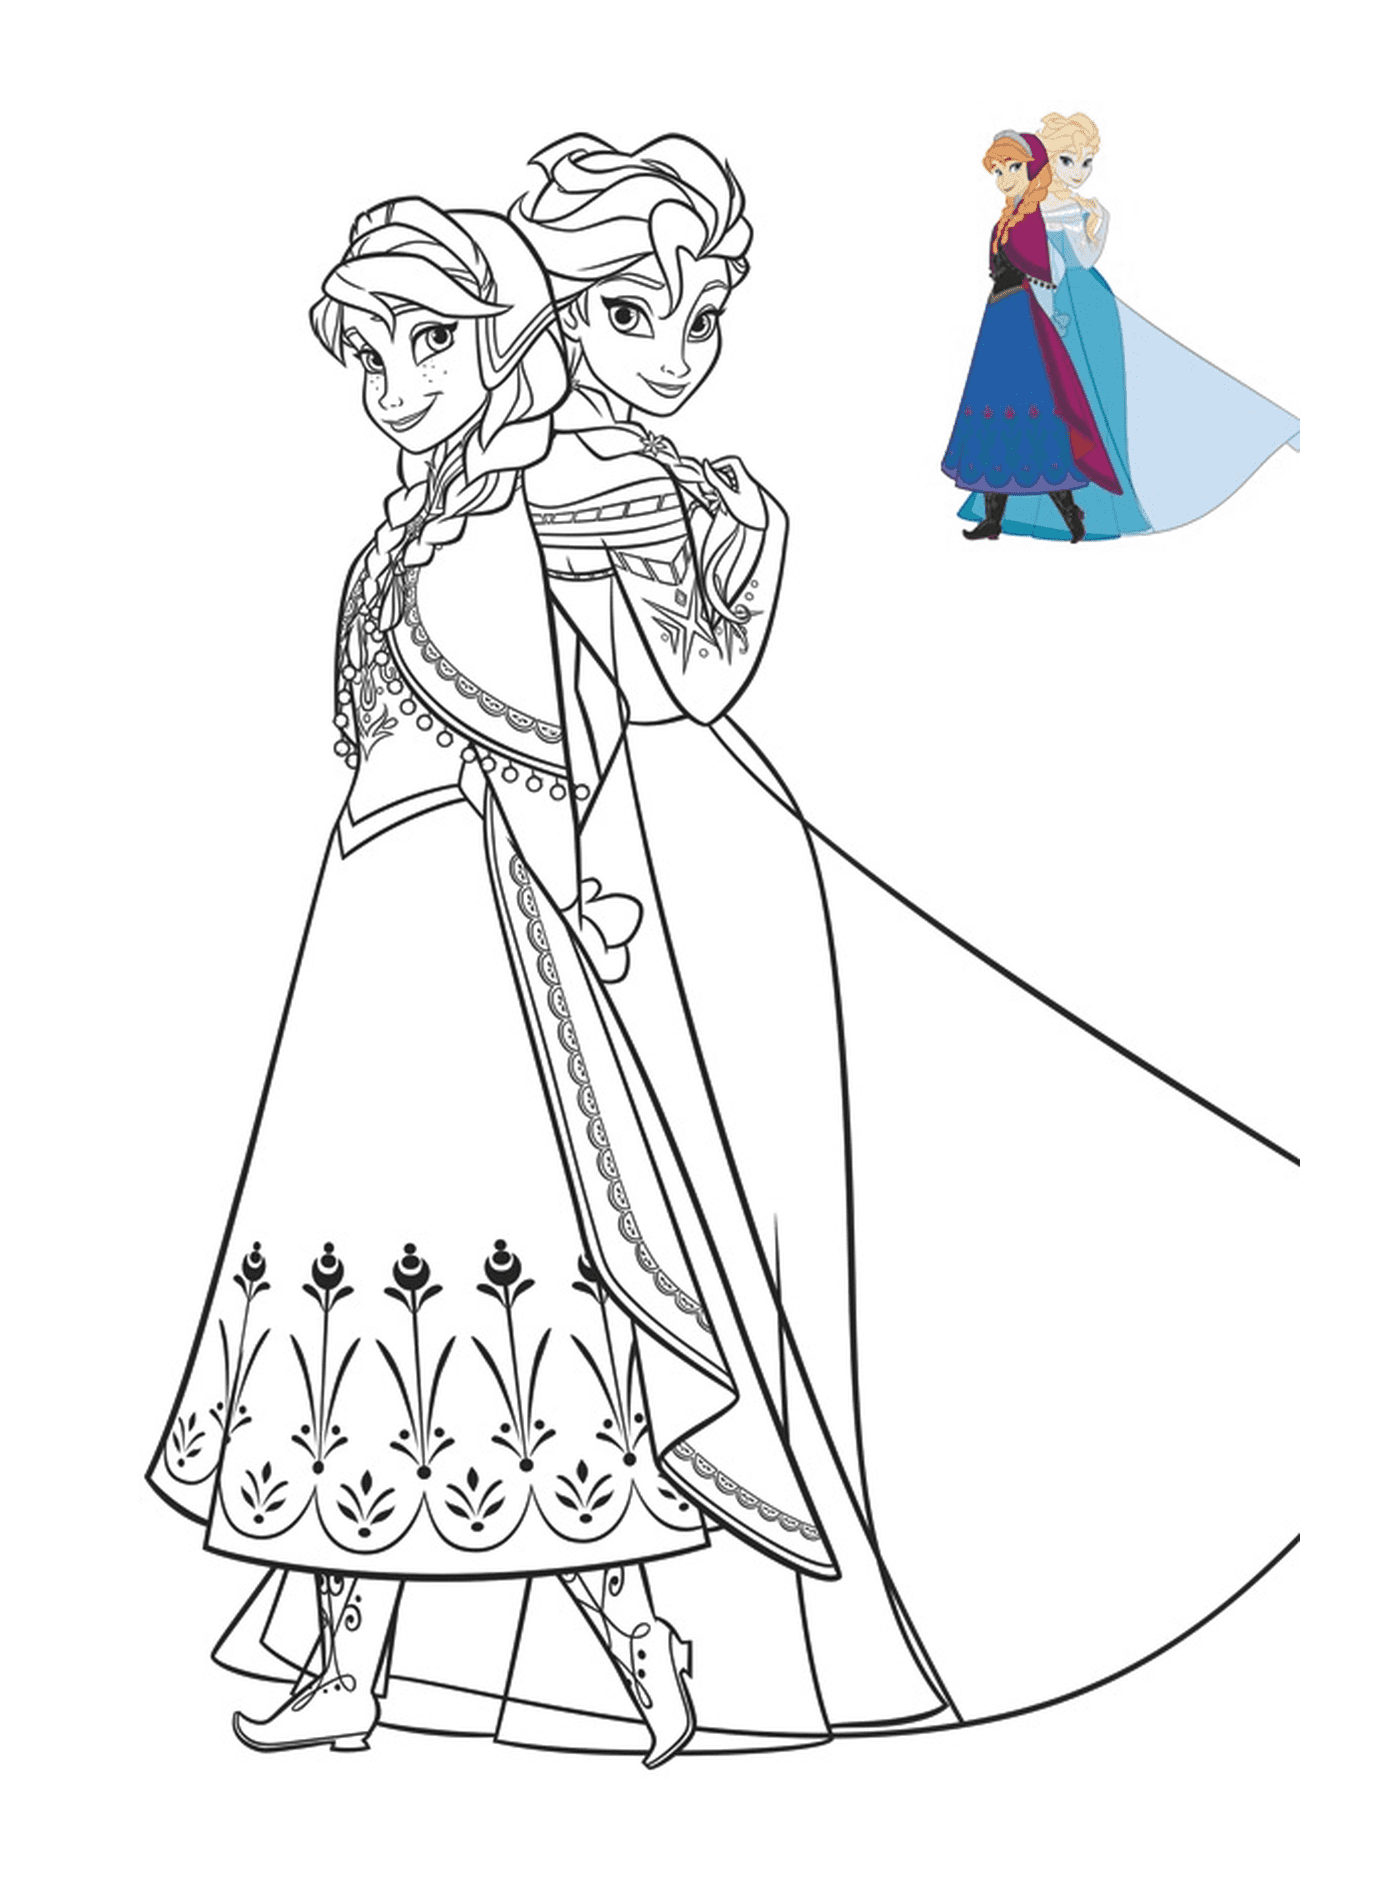   Anna et Elsa, les courageuses reines des neiges 